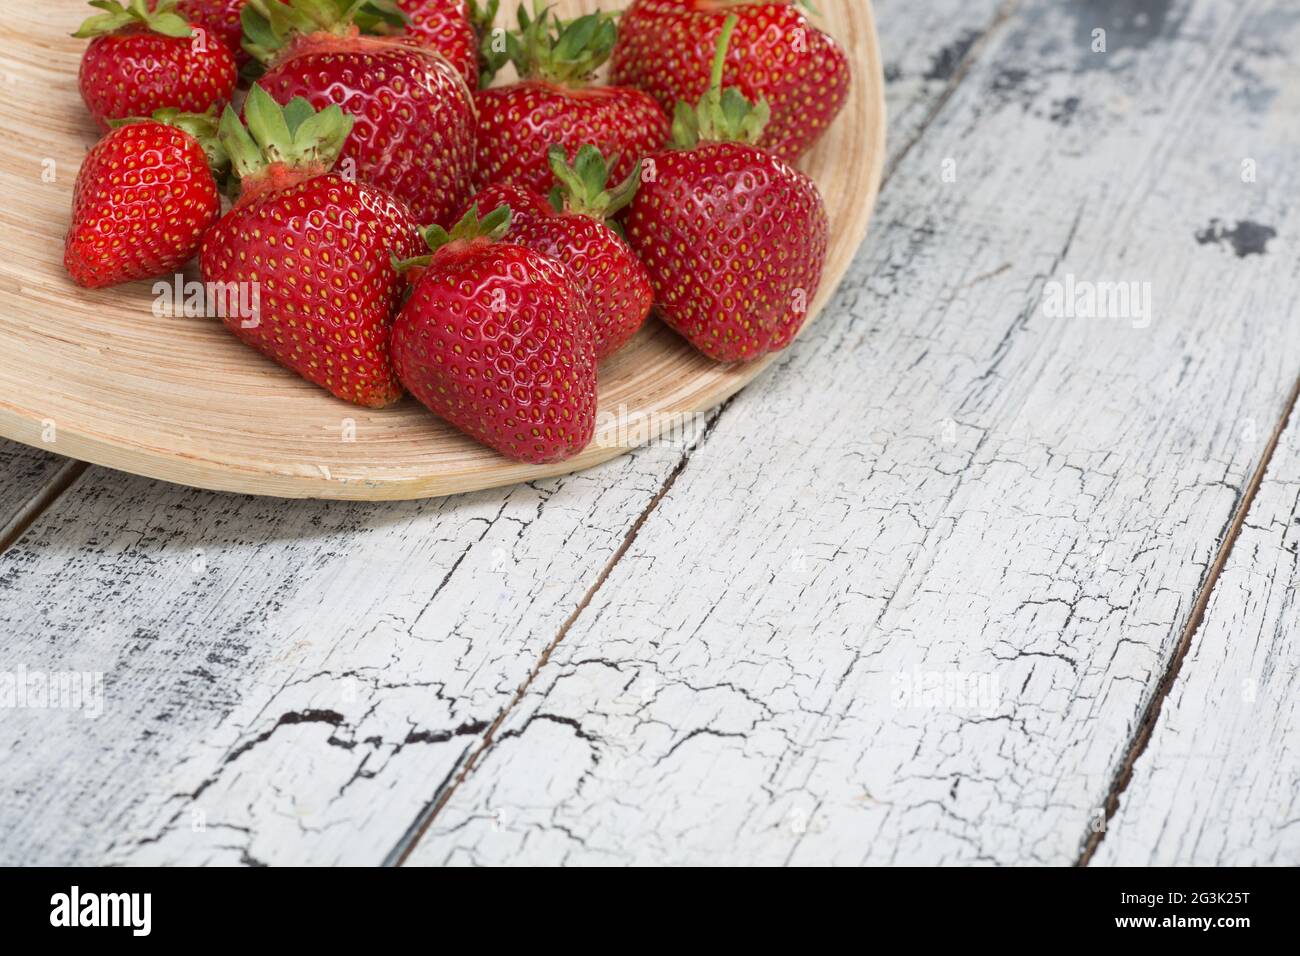 Ripe red strawberries Stock Photo